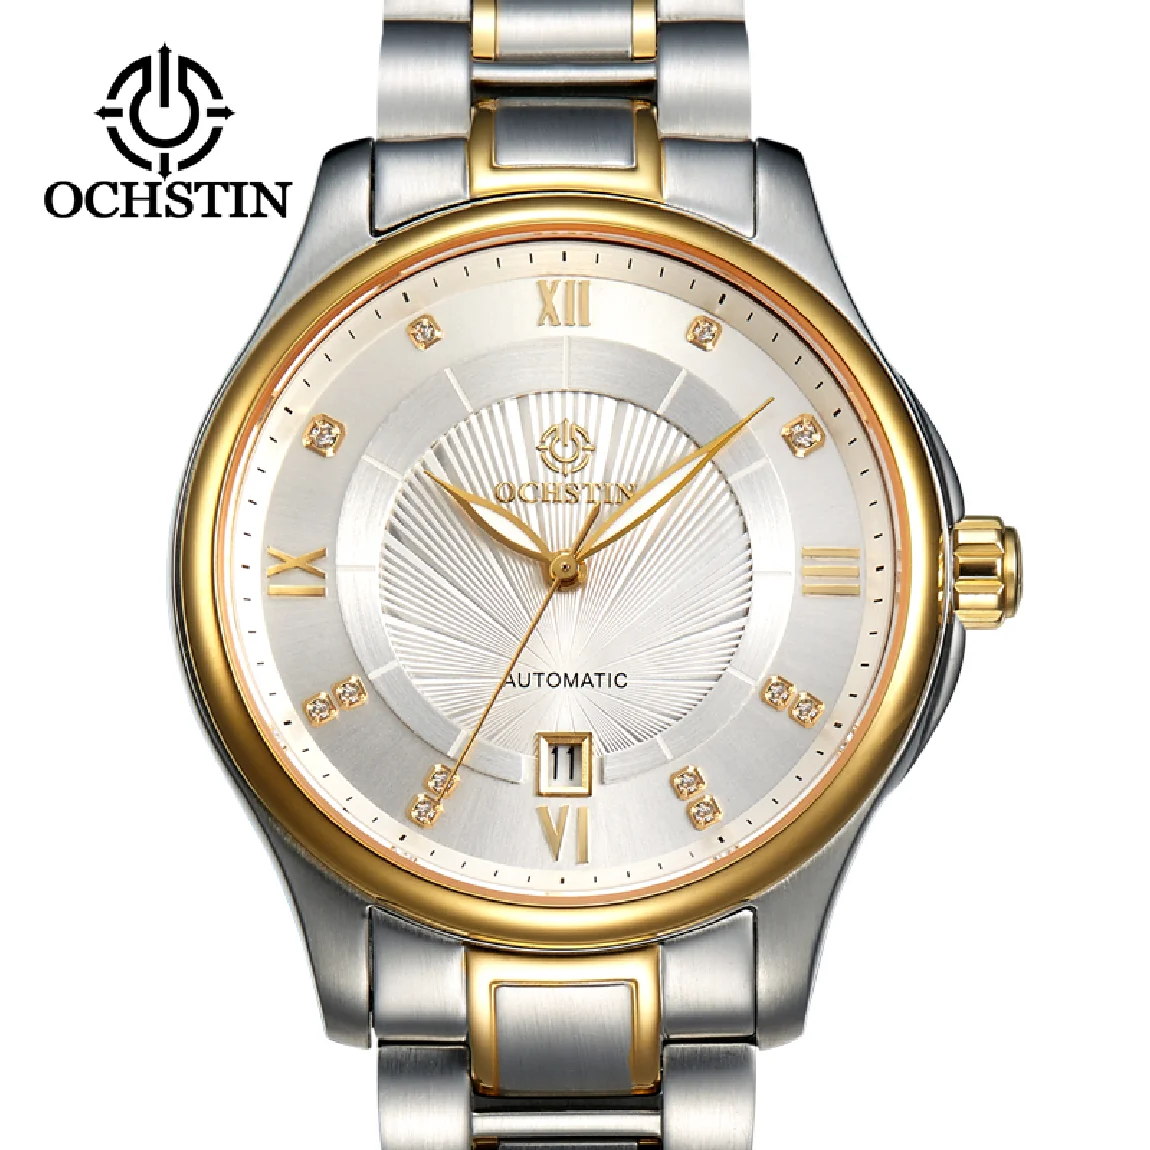 

OCHSTIN Mechanical Watch Men Automatic 42mm Case Citizen Movement Watch For Men Top Brand Luxury Classic Business Wristwatch